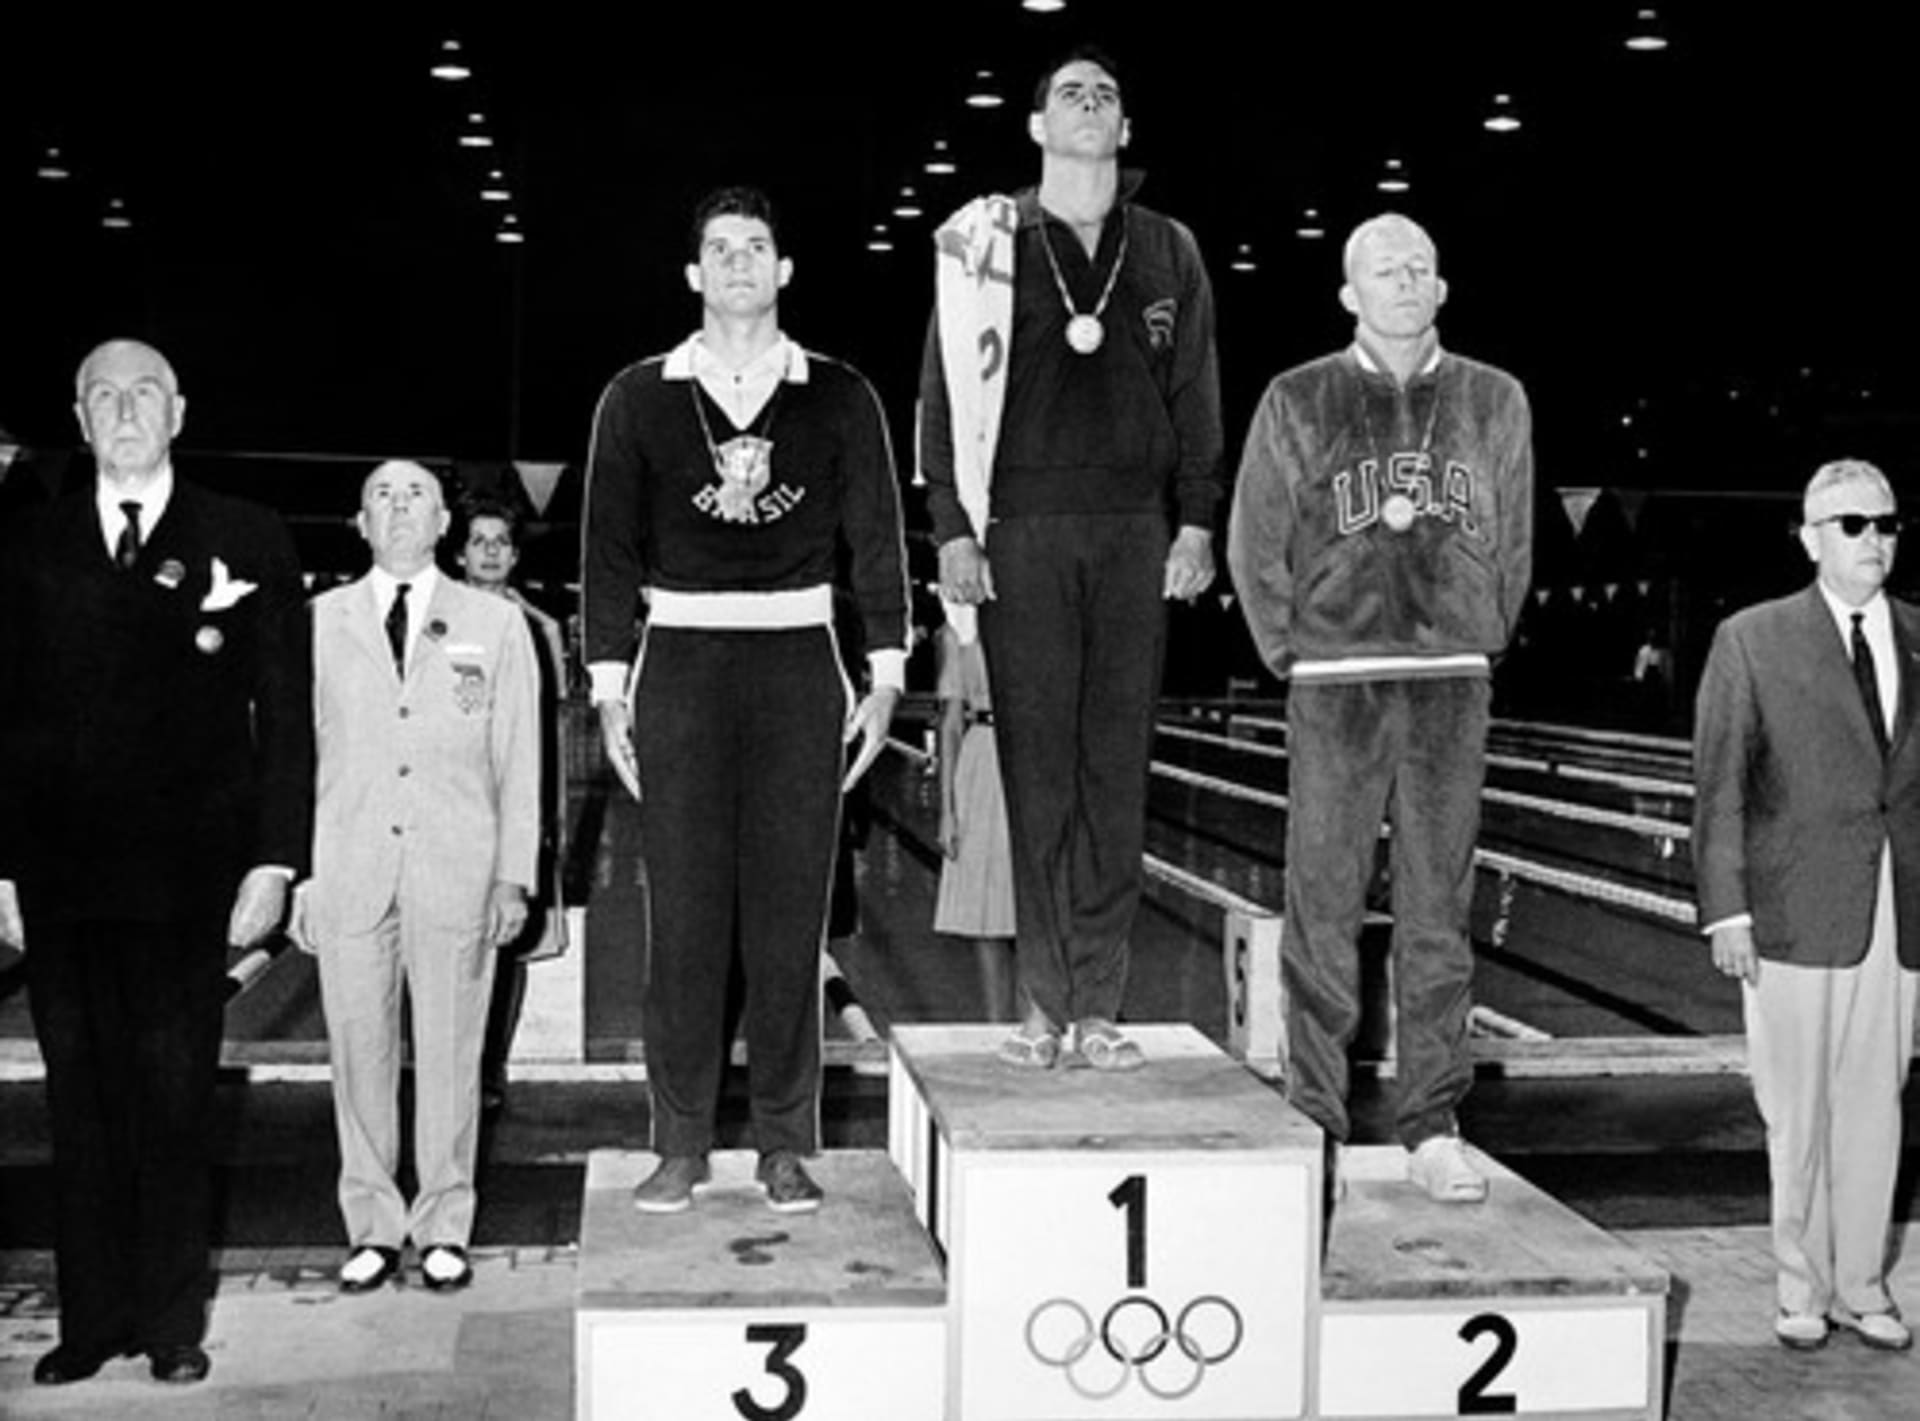 Vítěz zlaté medaile John Devitt z Austrálie, vedle něj stříbrný medailista Lance Larson (vpravo) a bronzový medailista Manuel Dos Santos poslouchají státní hymnu na pódiu během ceremoniálu udílení cen za plavání.